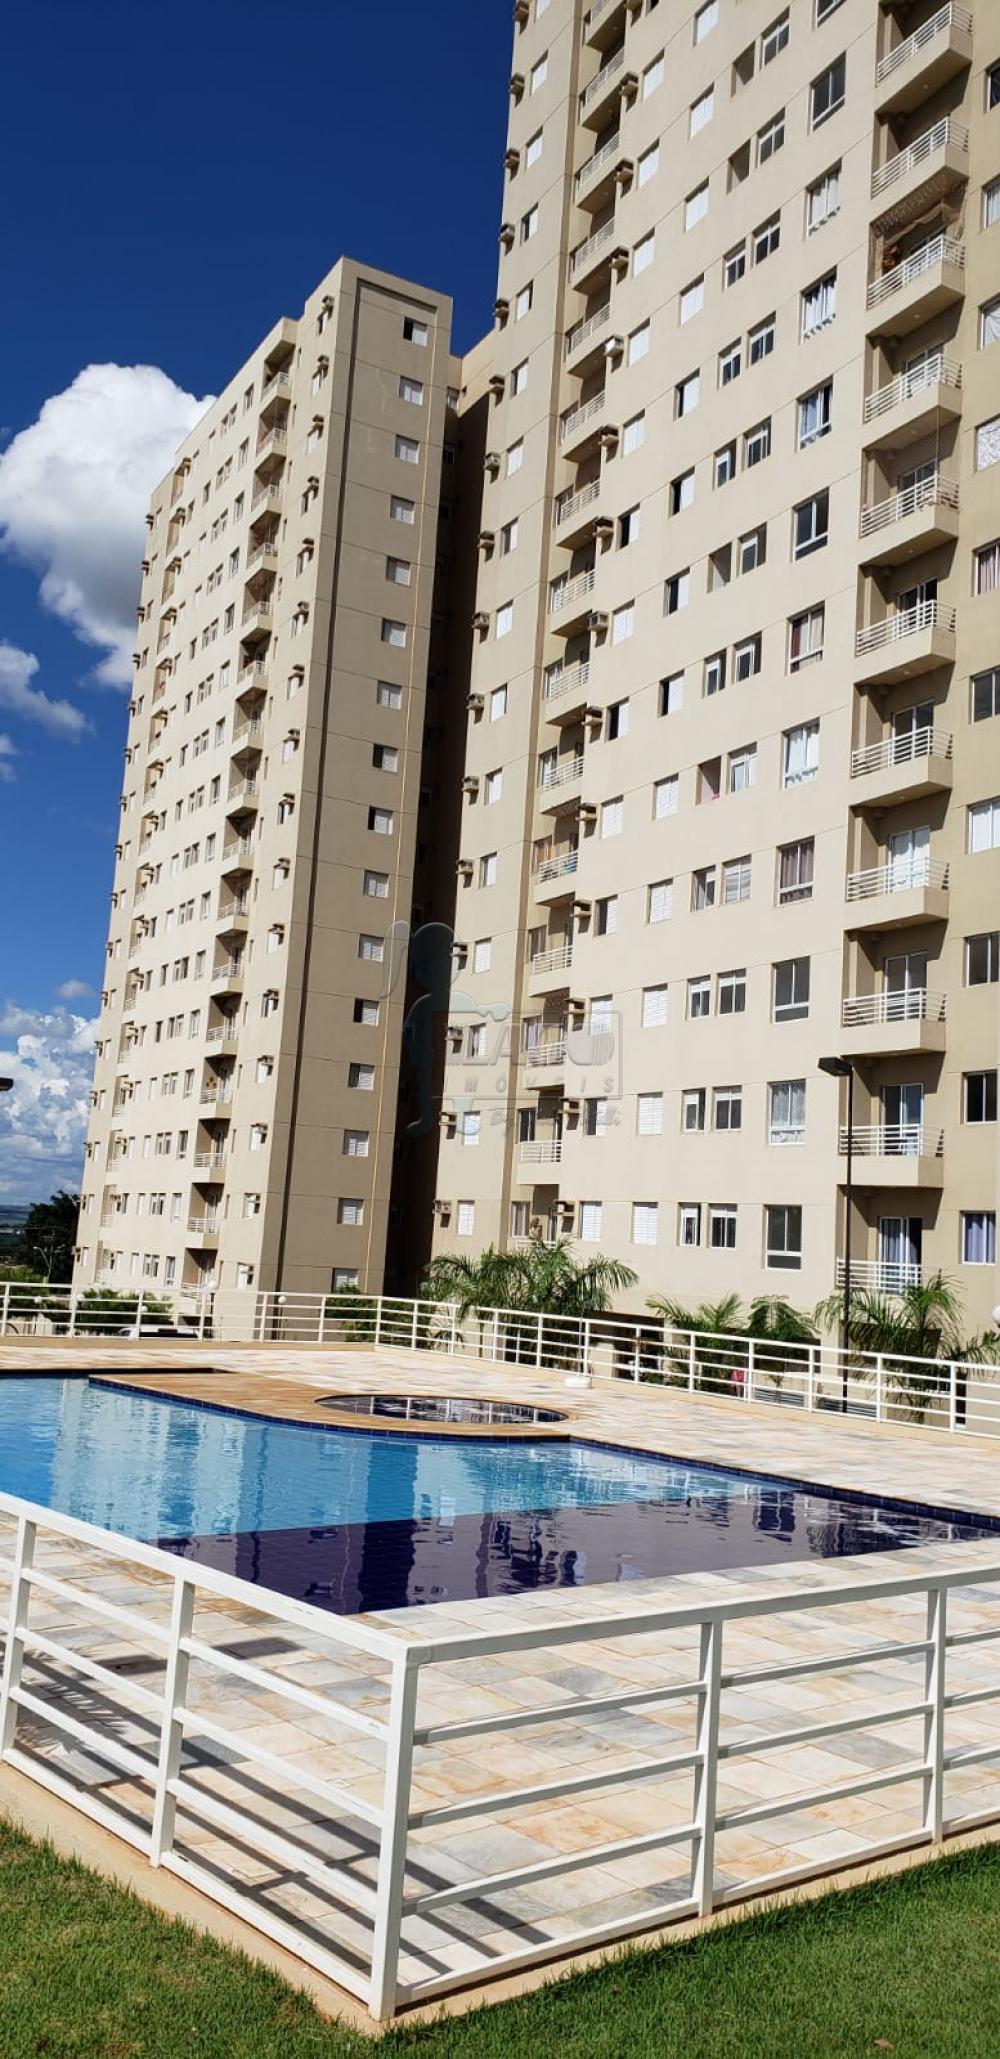 Alugar Apartamentos / Padrão em Ribeirão Preto R$ 700,00 - Foto 19